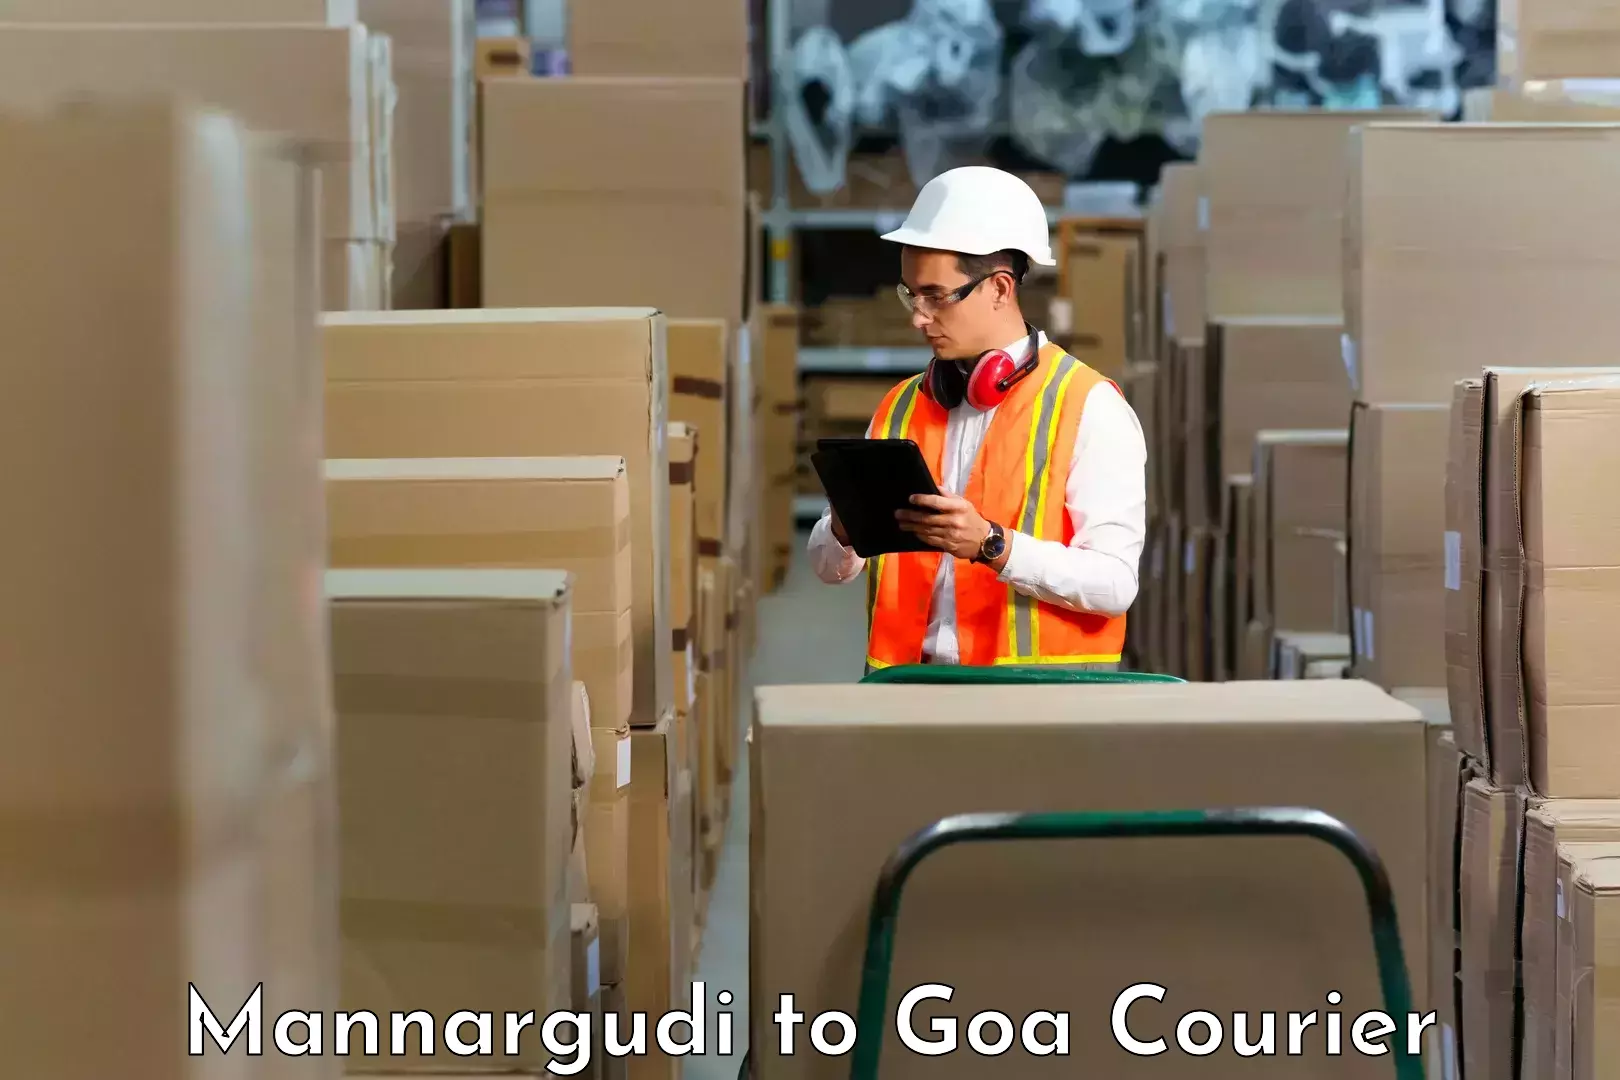 Courier service partnerships Mannargudi to Mormugao Port